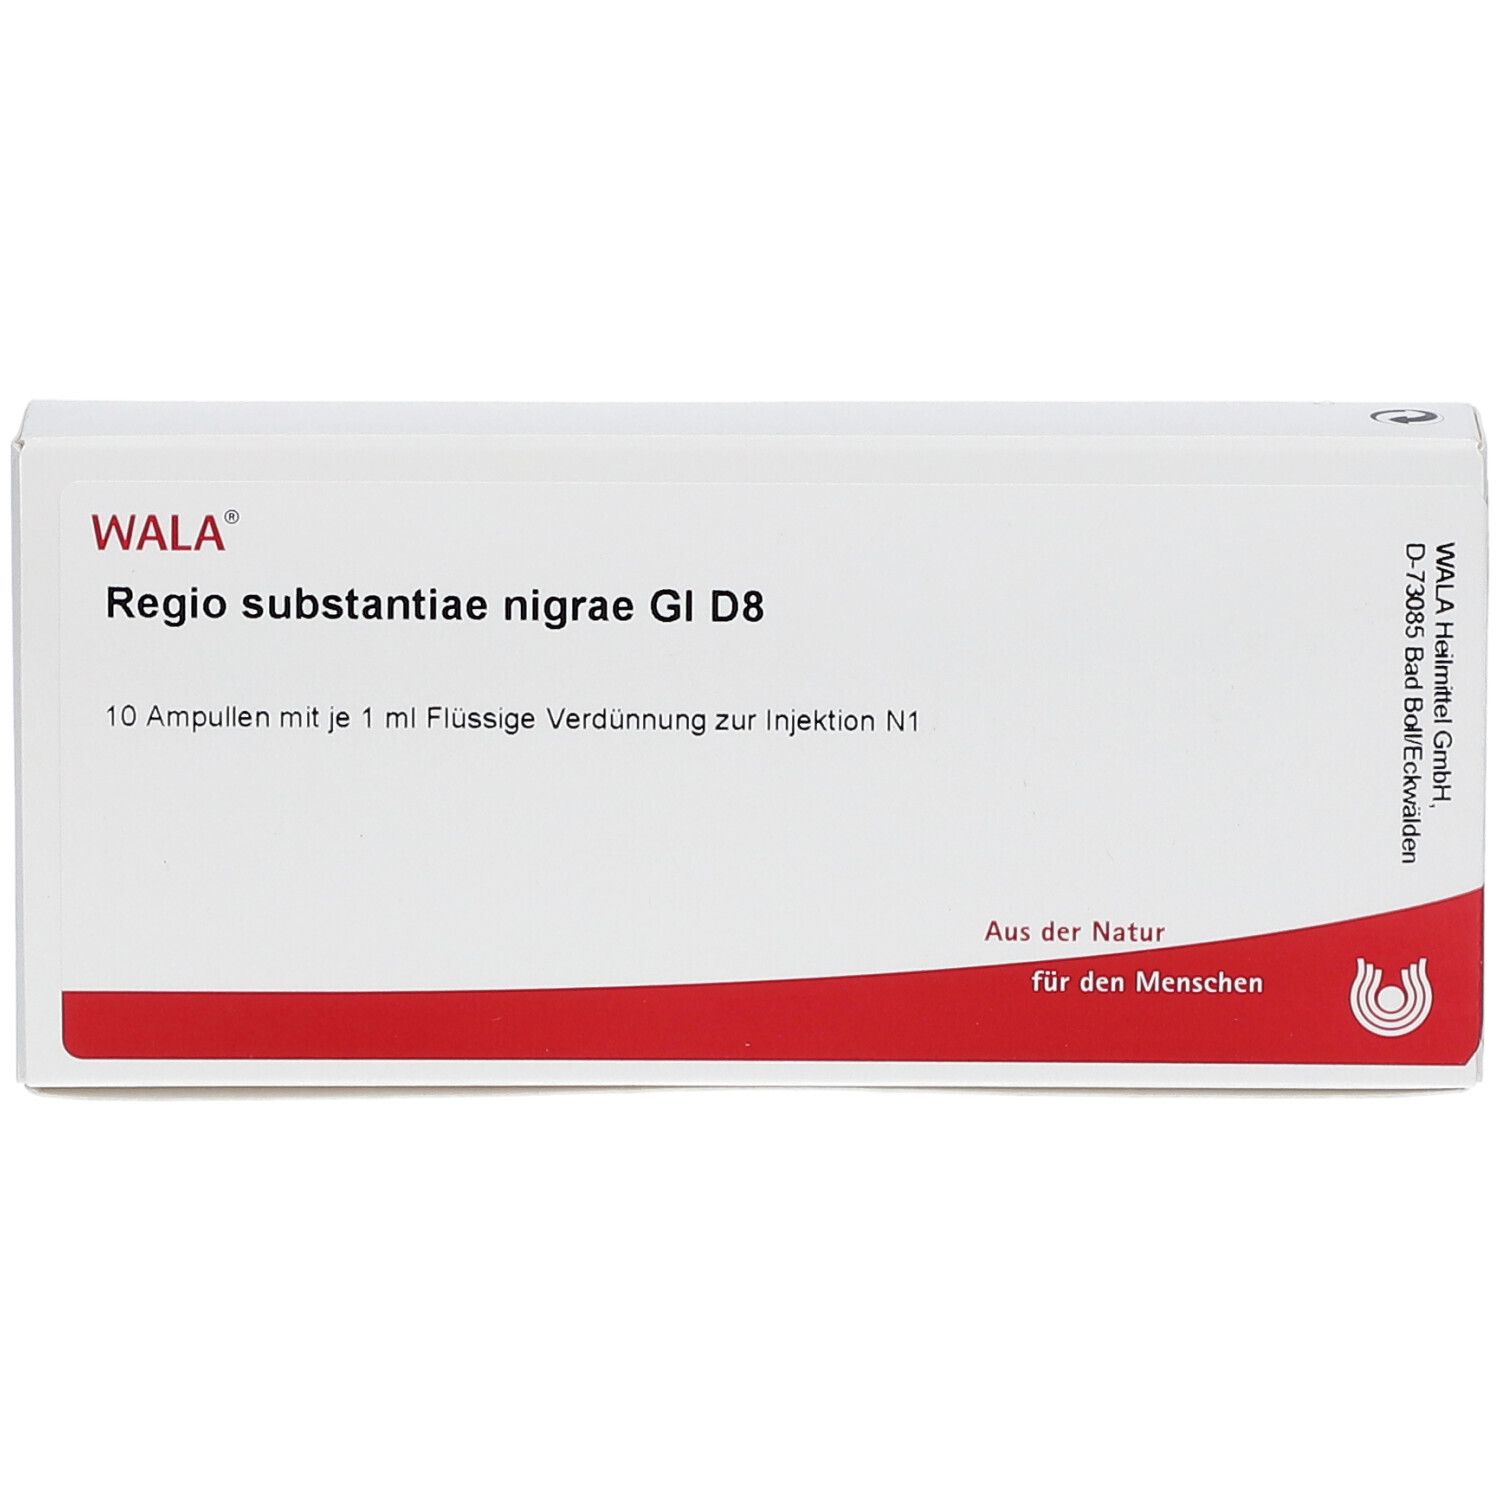 WALA® Regio substantiae nigrae Gl D 8